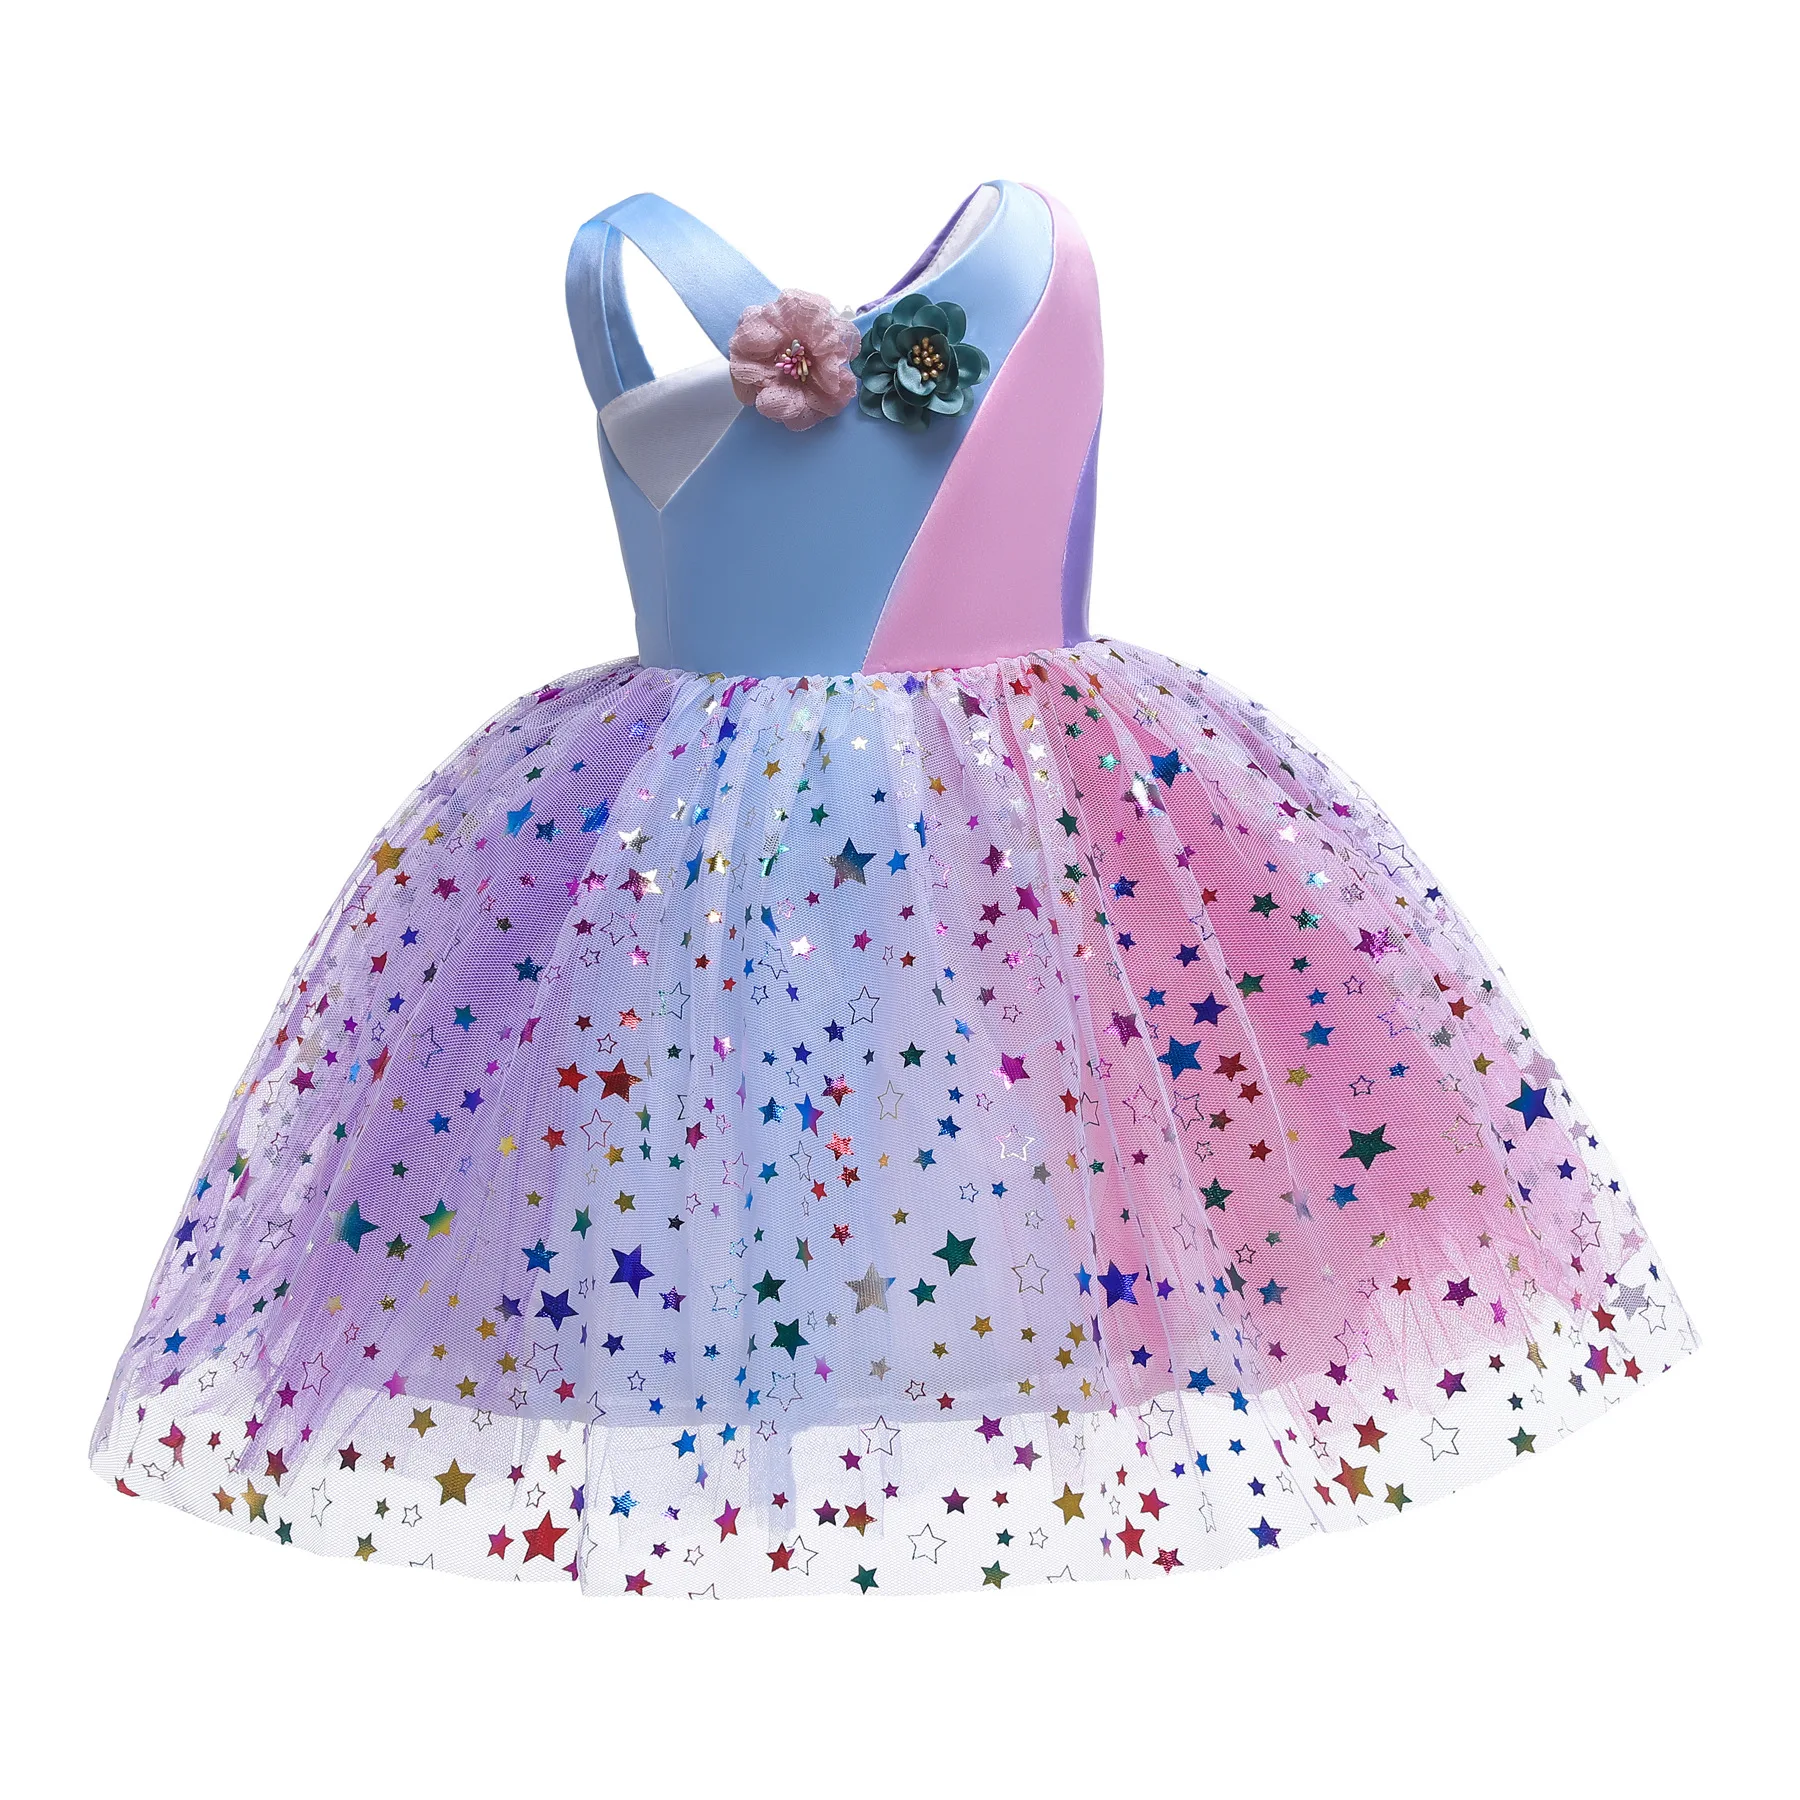 Bebé de Verano de las Niñas Vestidos de Ropa de Niños Vestido de Flores arco iris de coincidencia de color de Traje de Navidad Fiesta de Baile Ropa de Boda 1